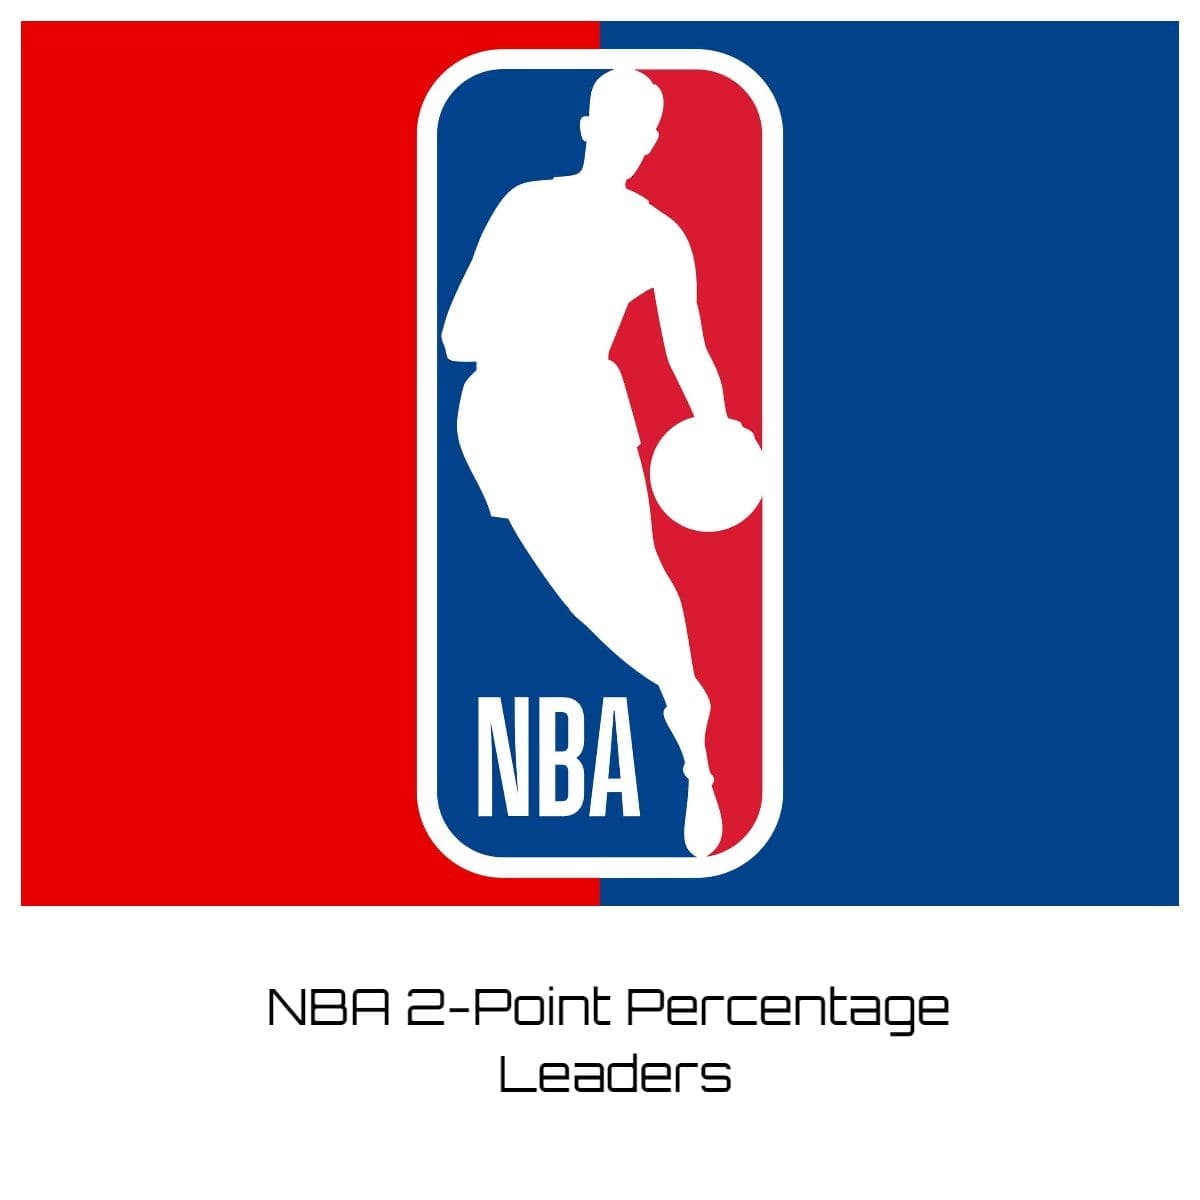 NBA 2-Point Percentage Leaders